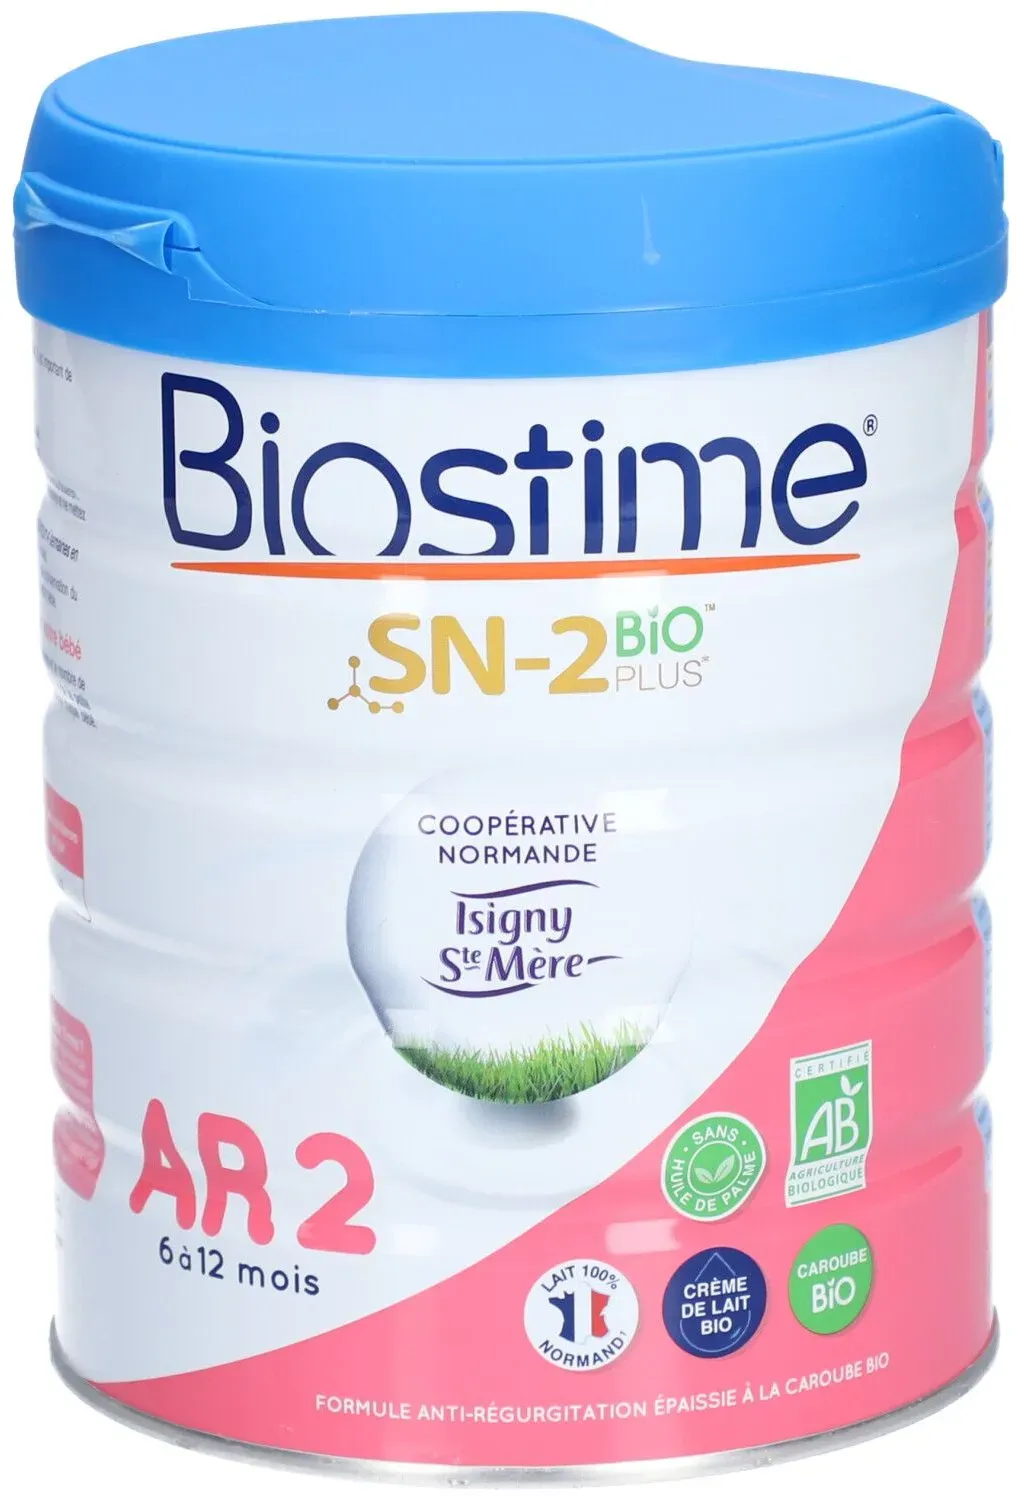 BIOSTIME AR 2 - Denrée alimentaire destinée à des fins médicales spéciales. - bt 800 g 800 g lait